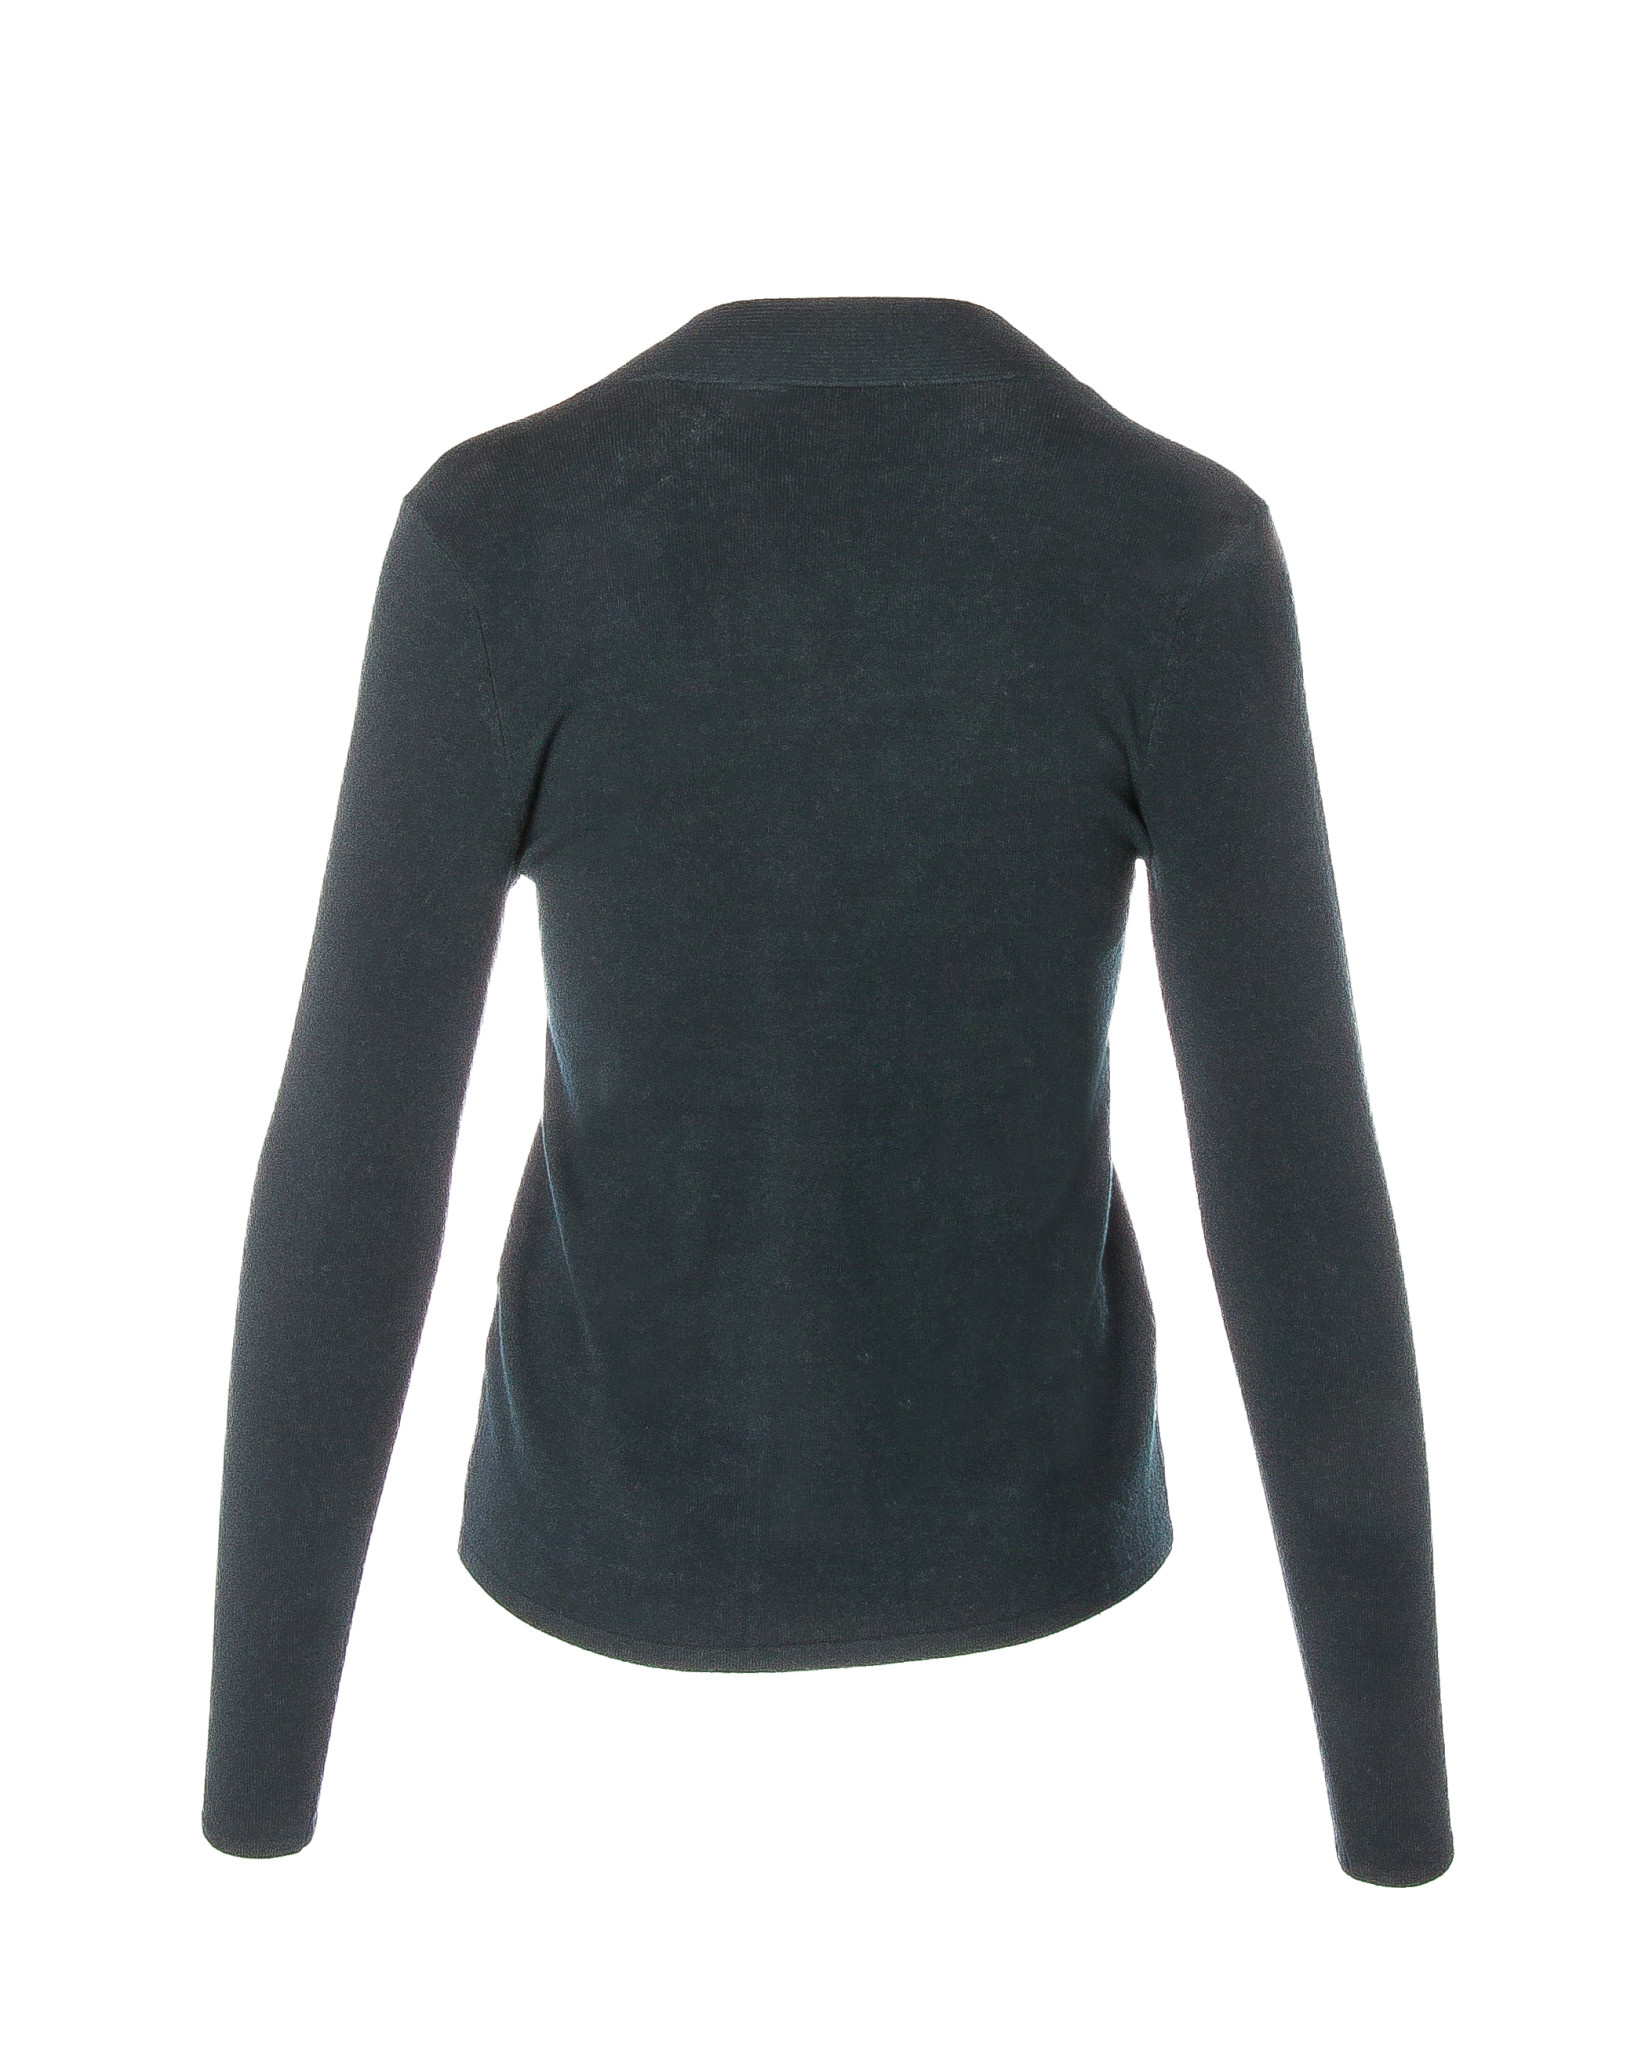 ELLIOTT LAUREN Fitted Sweater with Twist Detail, 55974